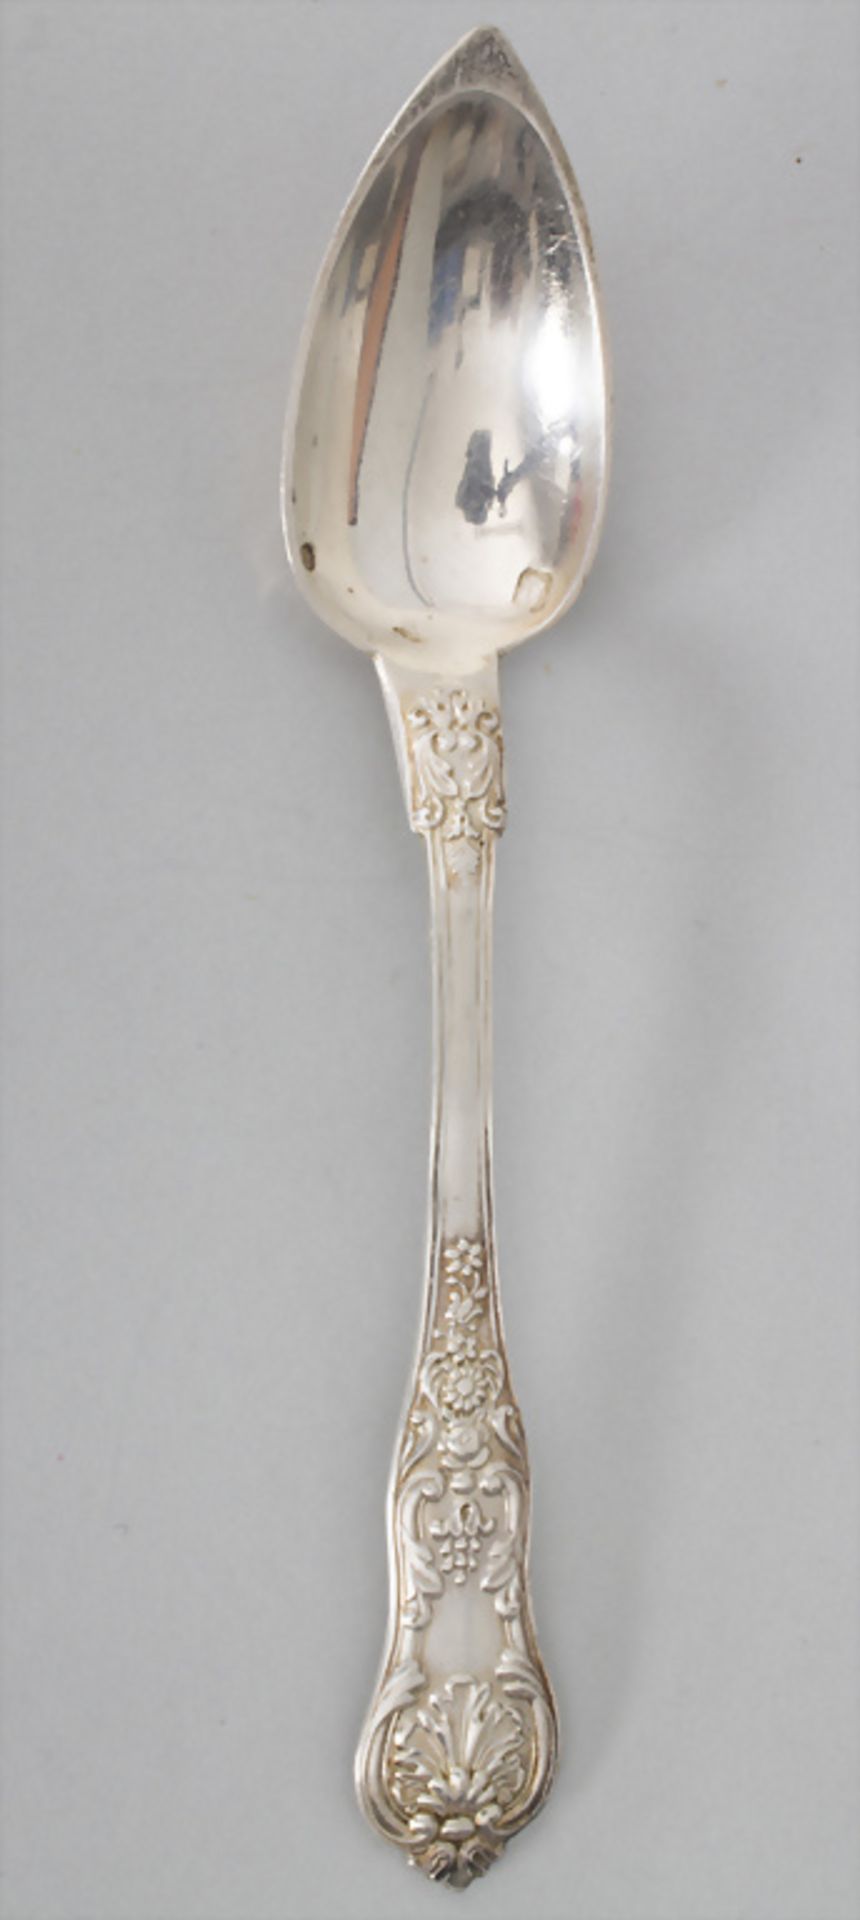 6 Teelöffel / 6 silver tea spoons, J. Bourdon, Paris, nach 1819 - Bild 2 aus 5